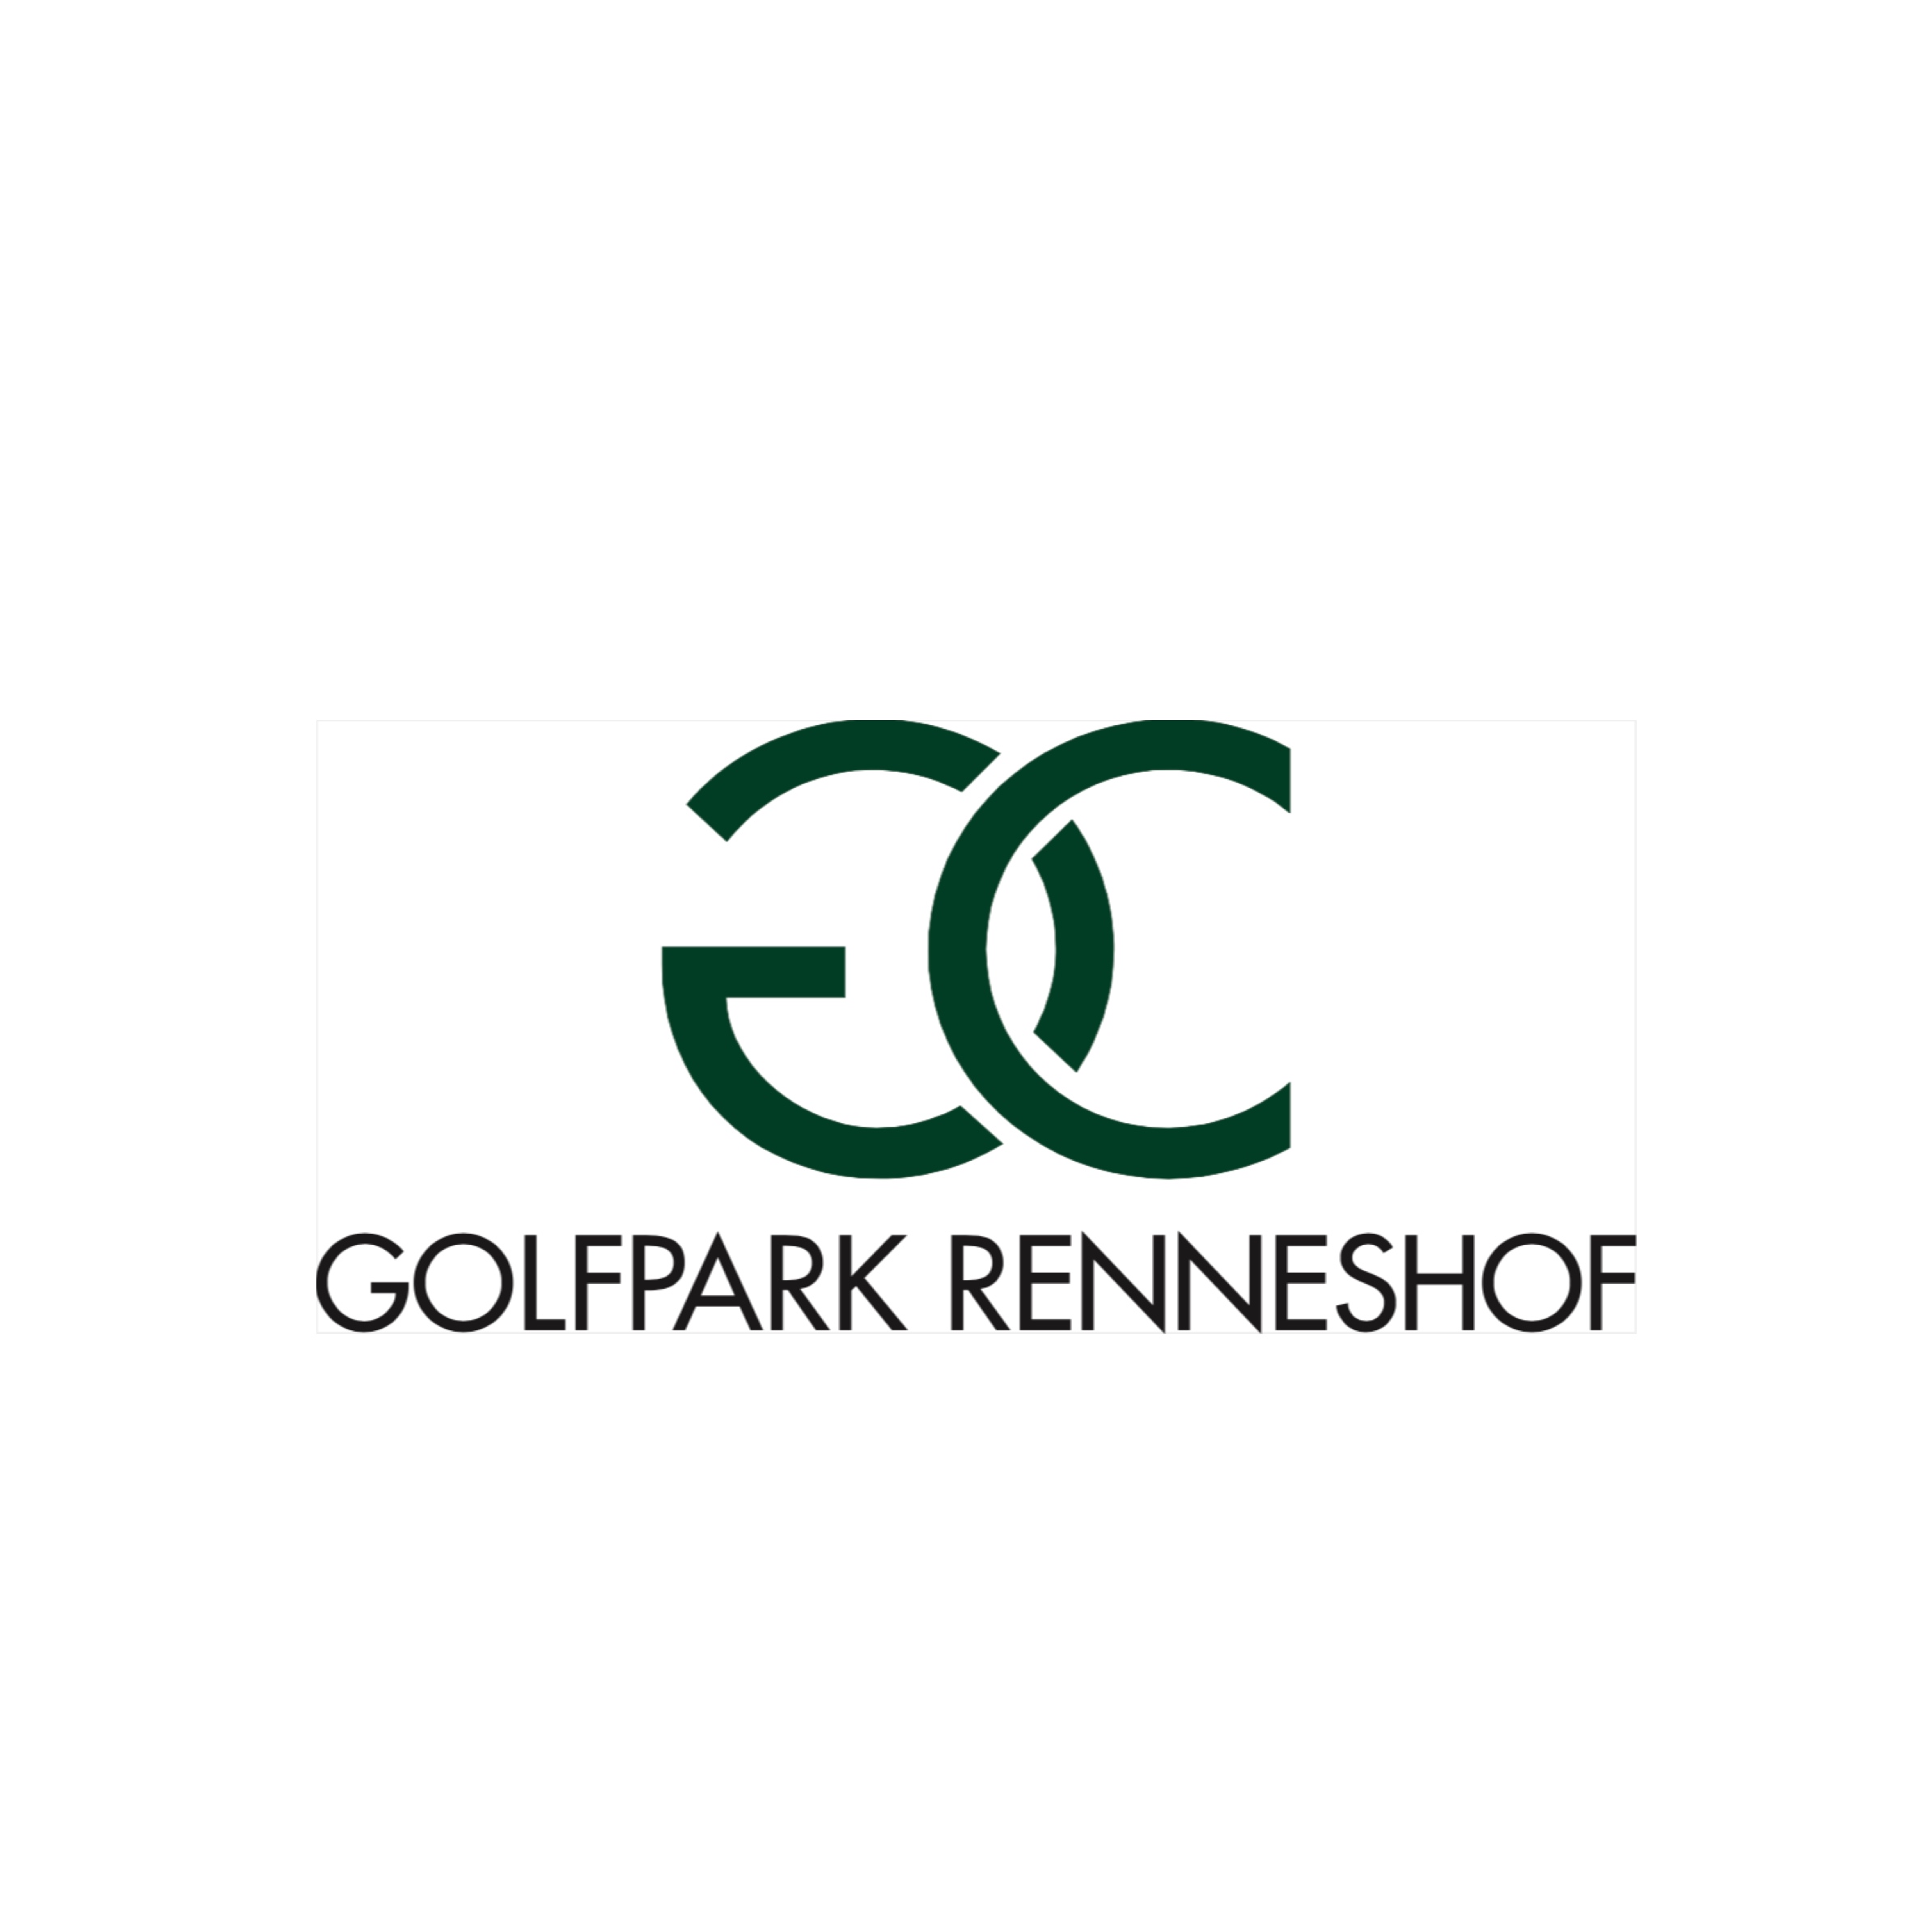 47. Renneshof (Golfpark Renneshof)